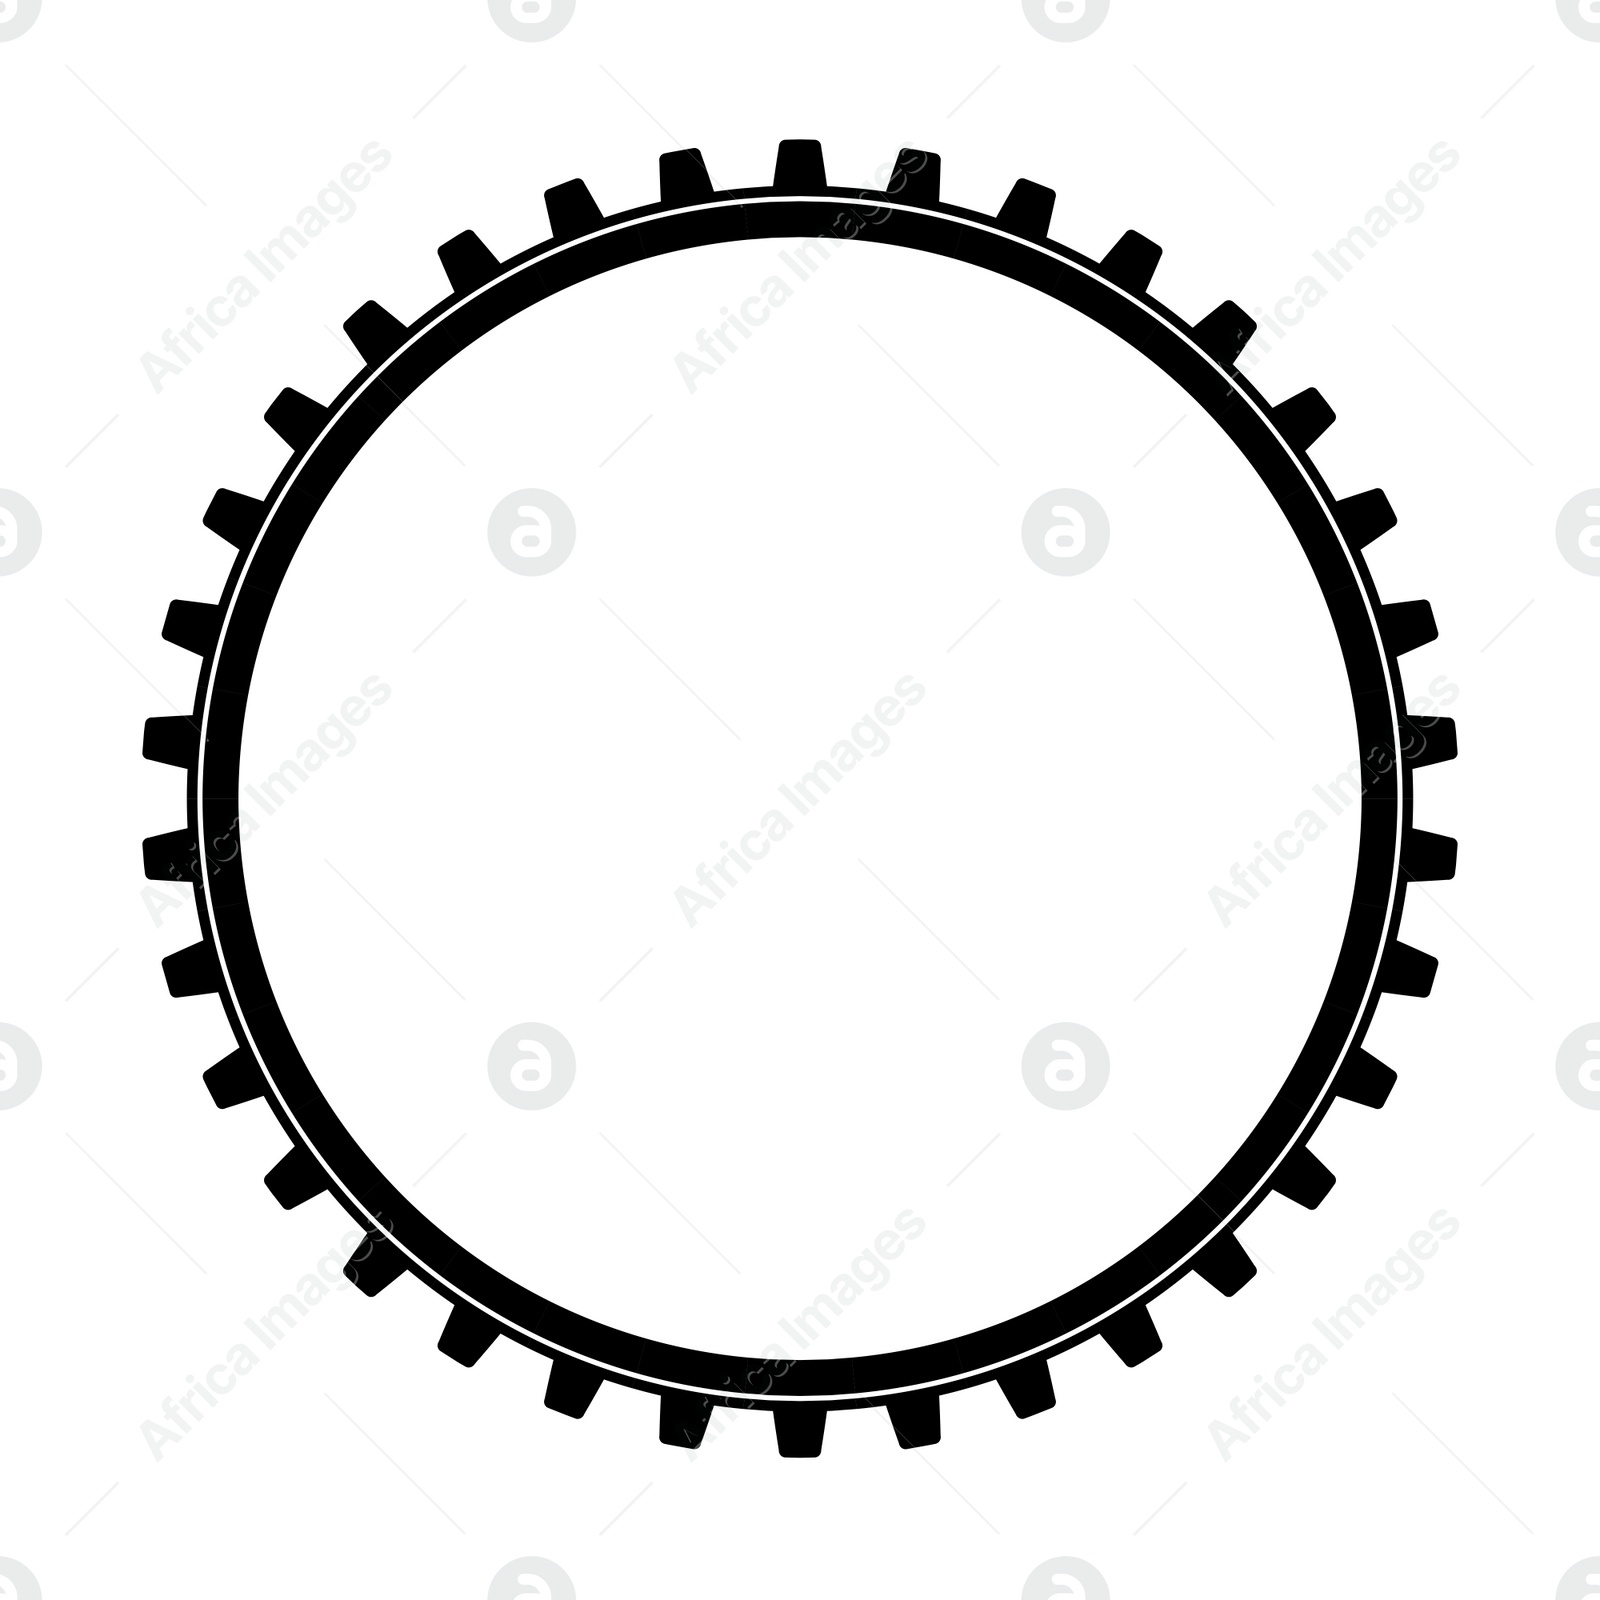 Illustration of  cogwheel for gear mechanism on white background